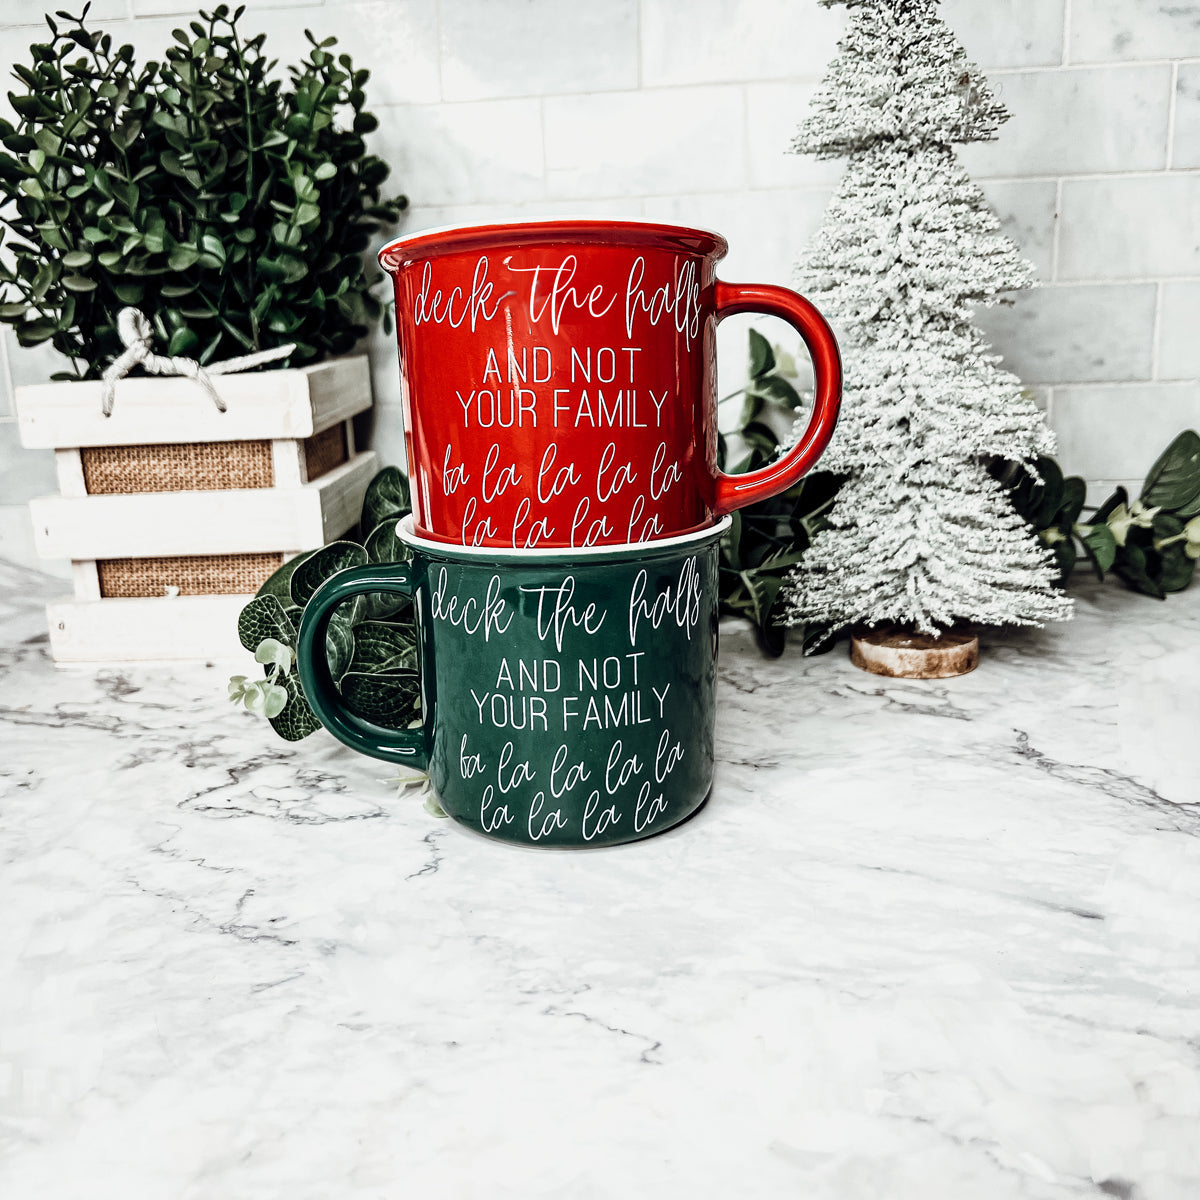 Christmas Coffee Bar Inspiration Decor, Red and green mugs